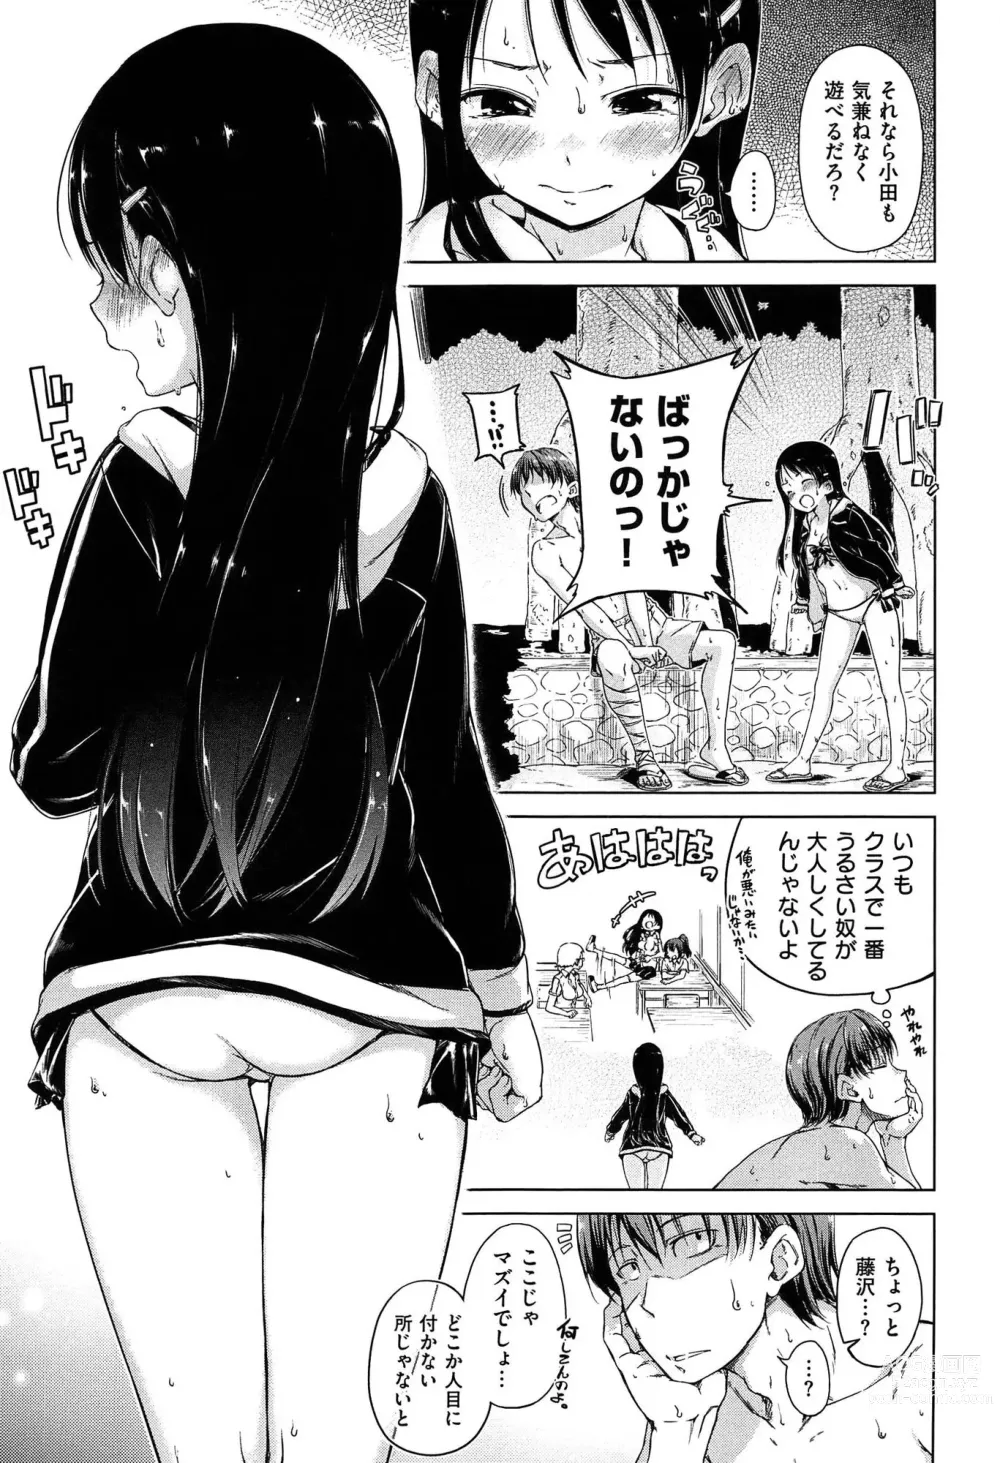 Page 15 of manga Kira Kira